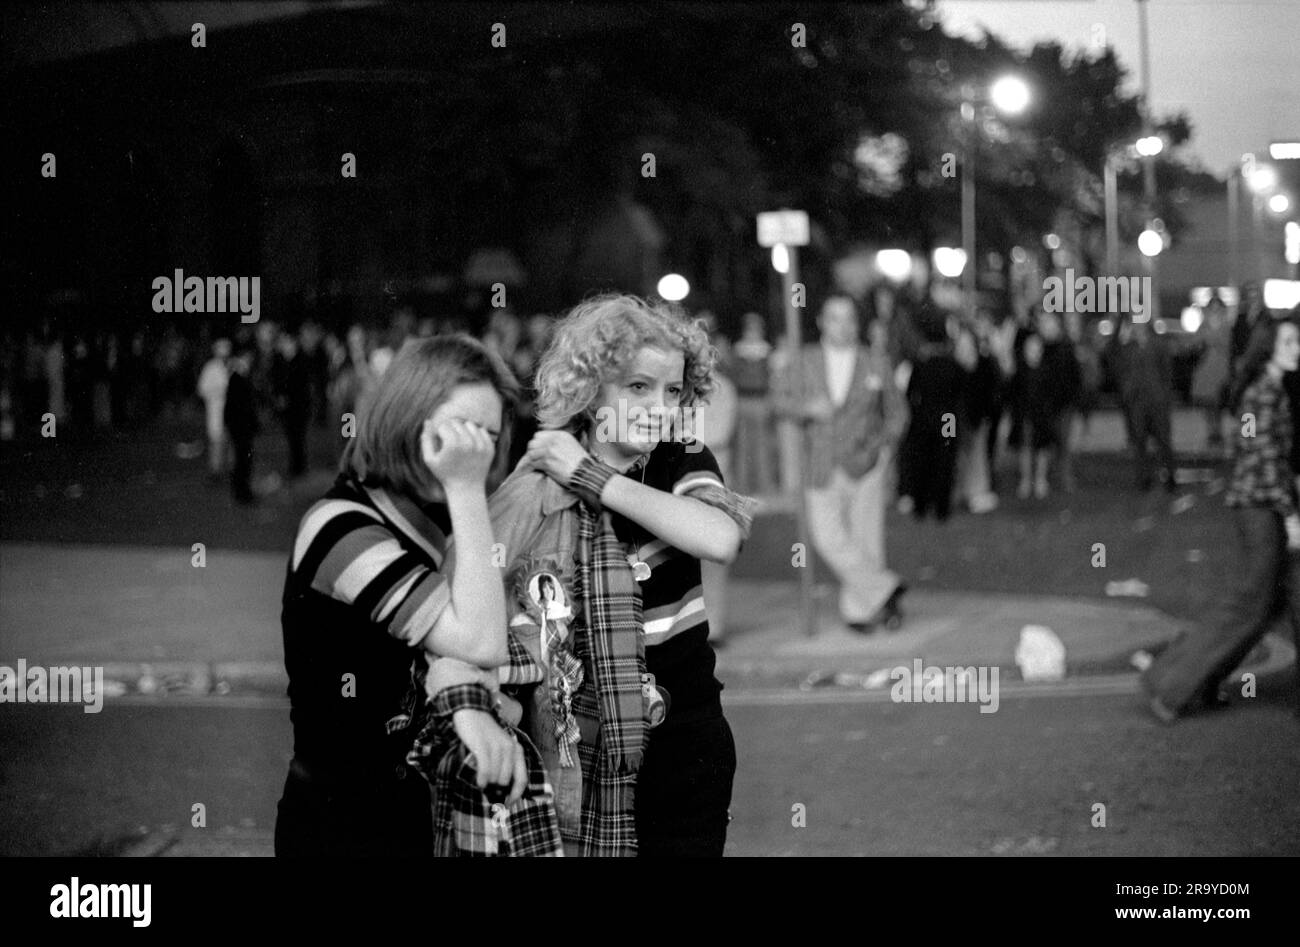 Les fans de Bay City Roller à l'extérieur de Hammersmith Odeon, après le concert en soirée. Pleurer avec émotion. Ils portent le tartan de Bay City Roller. Hammersmith, Londres, Angleterre vers 1975. Banque D'Images